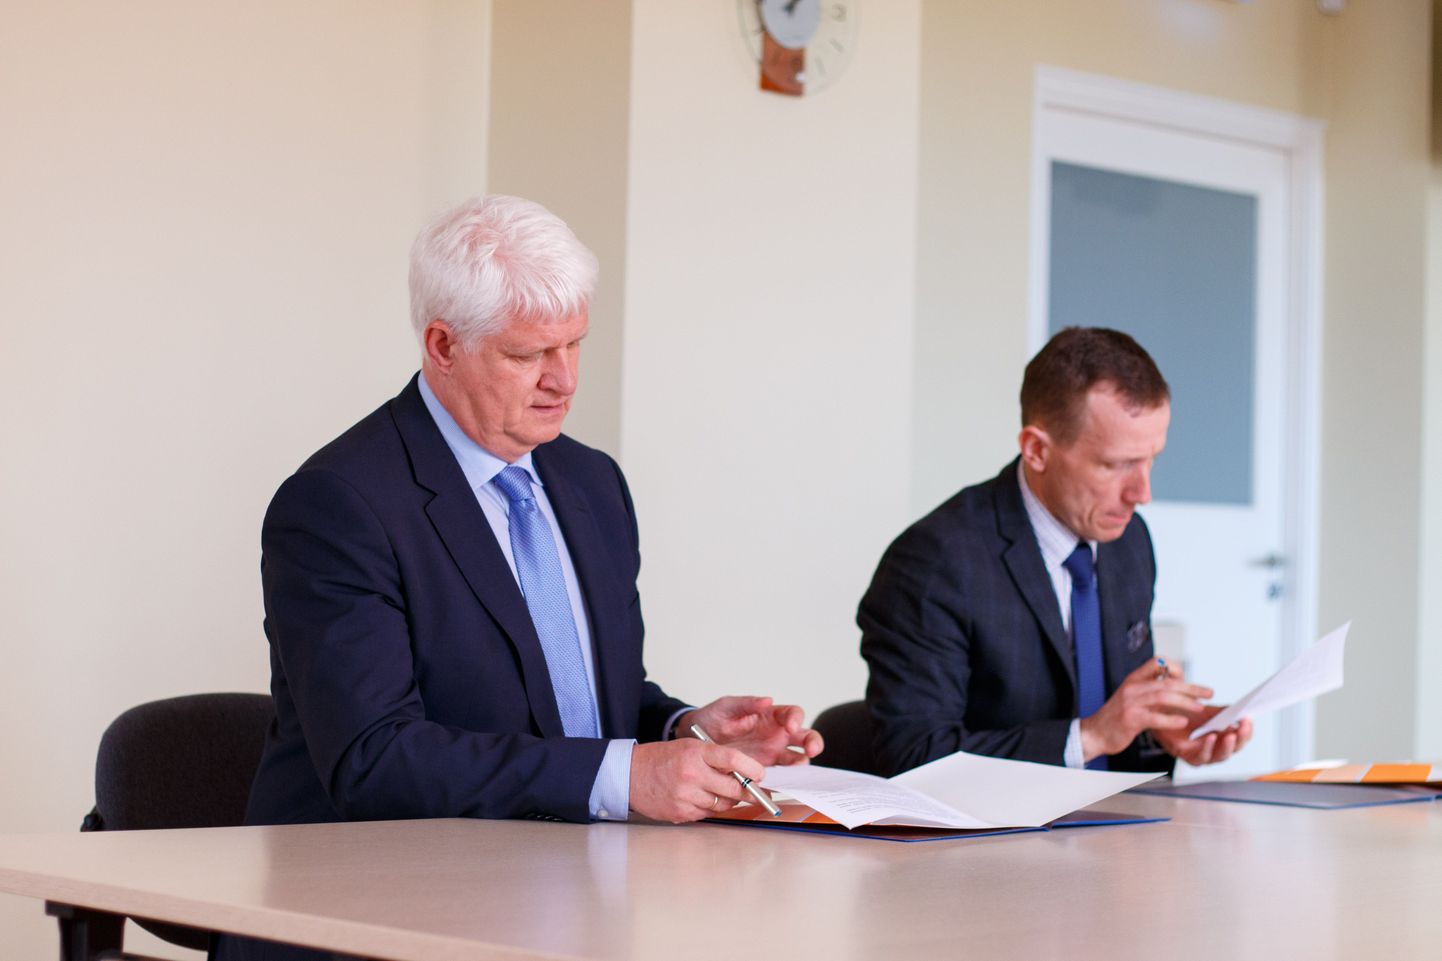 Lepingu allkirjastasid töötukassa juhatuse esimees Meelis Paavel ja Valga haigla juhataja Marek Seer.